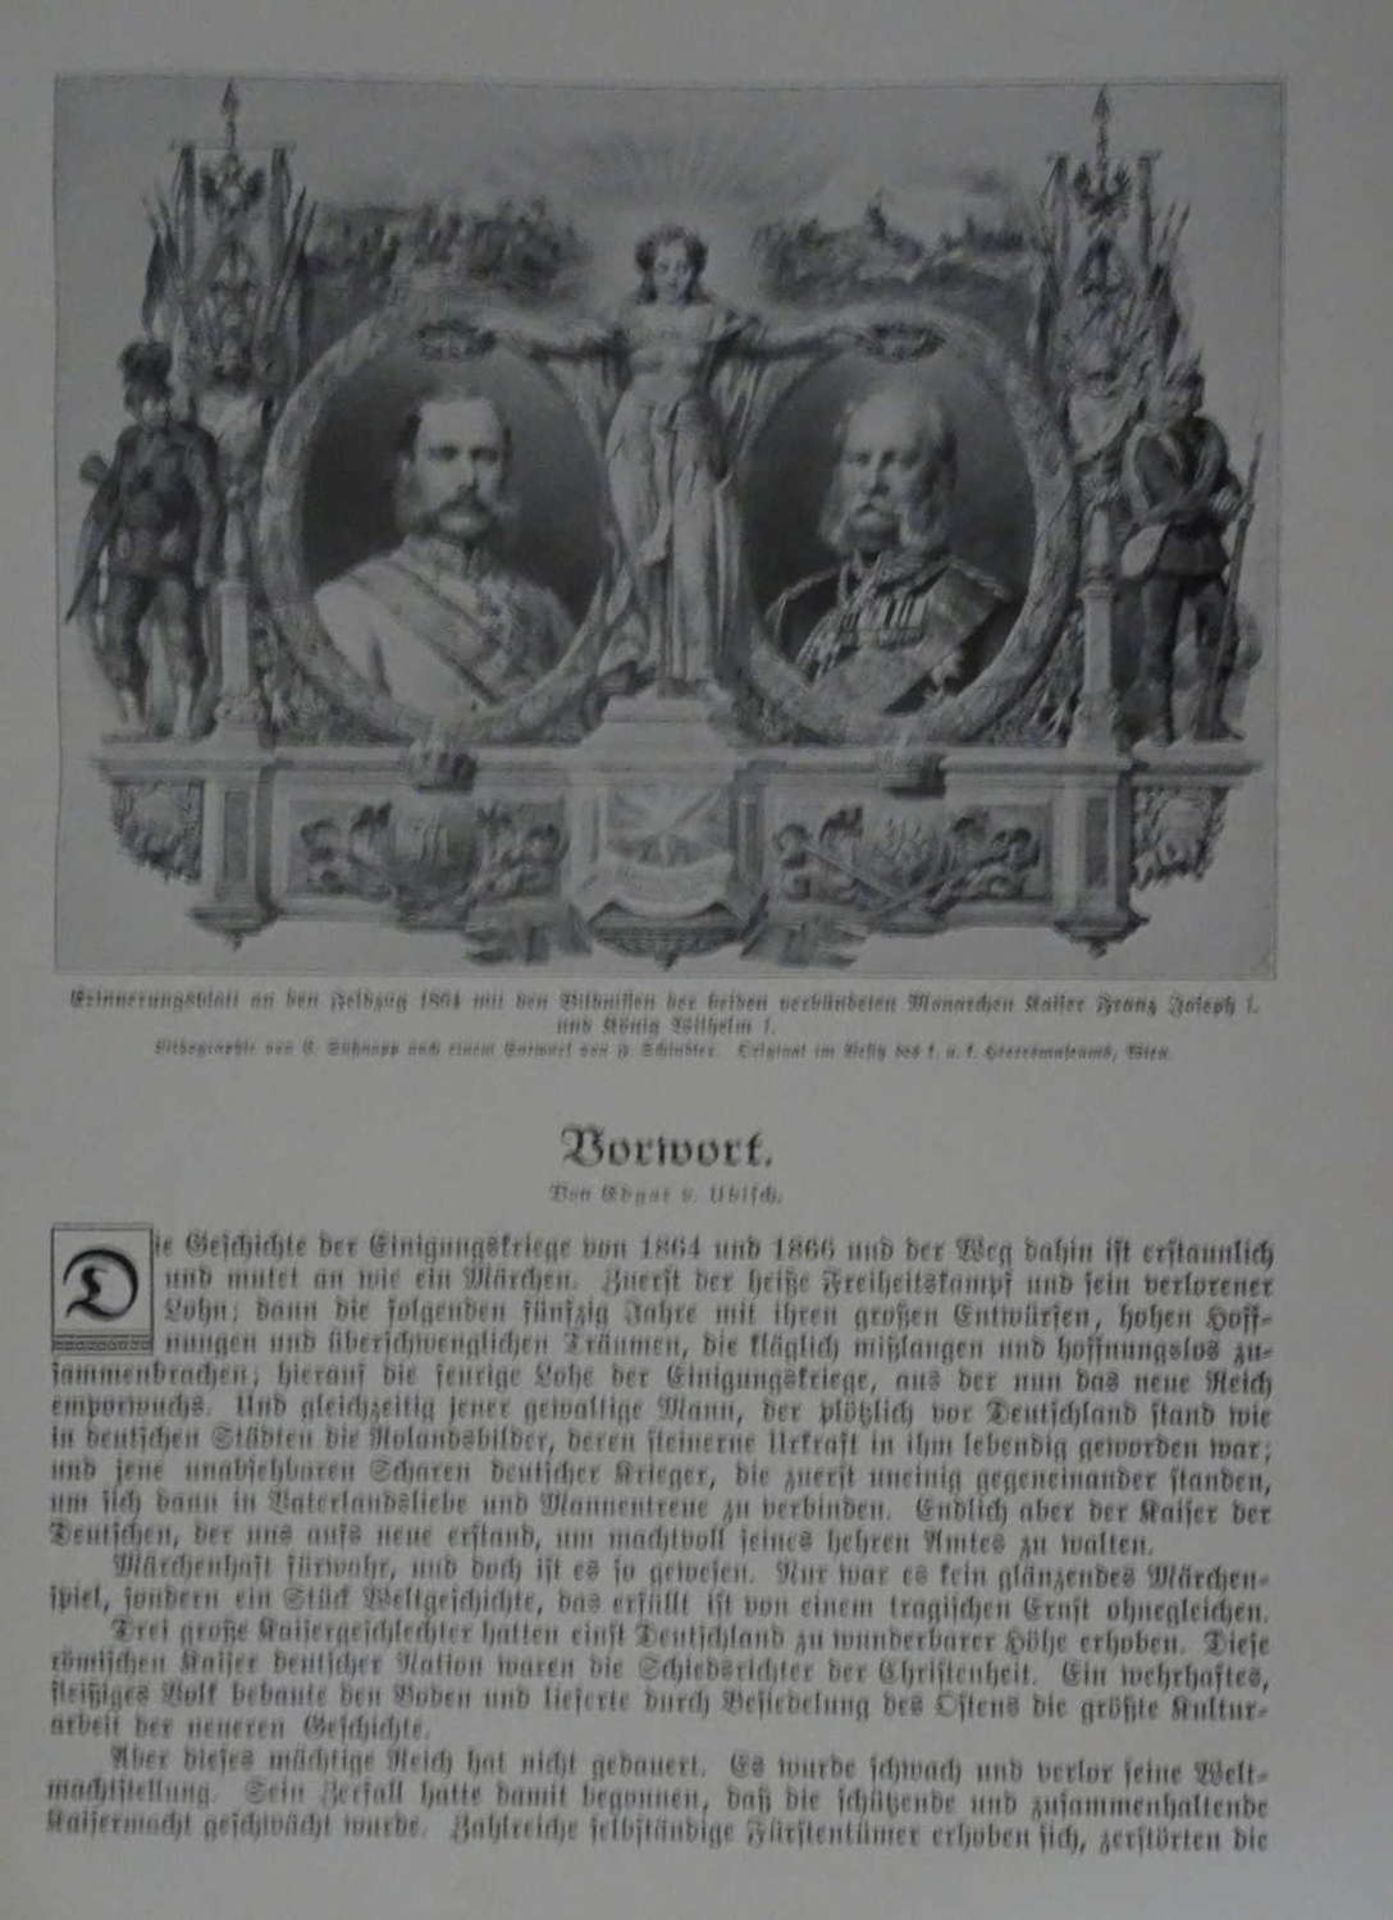 von Voss, Wilhelm, Illustrierte Geschichte der deutschen Einigungskriege 1864 - 1866.Union - Image 2 of 3